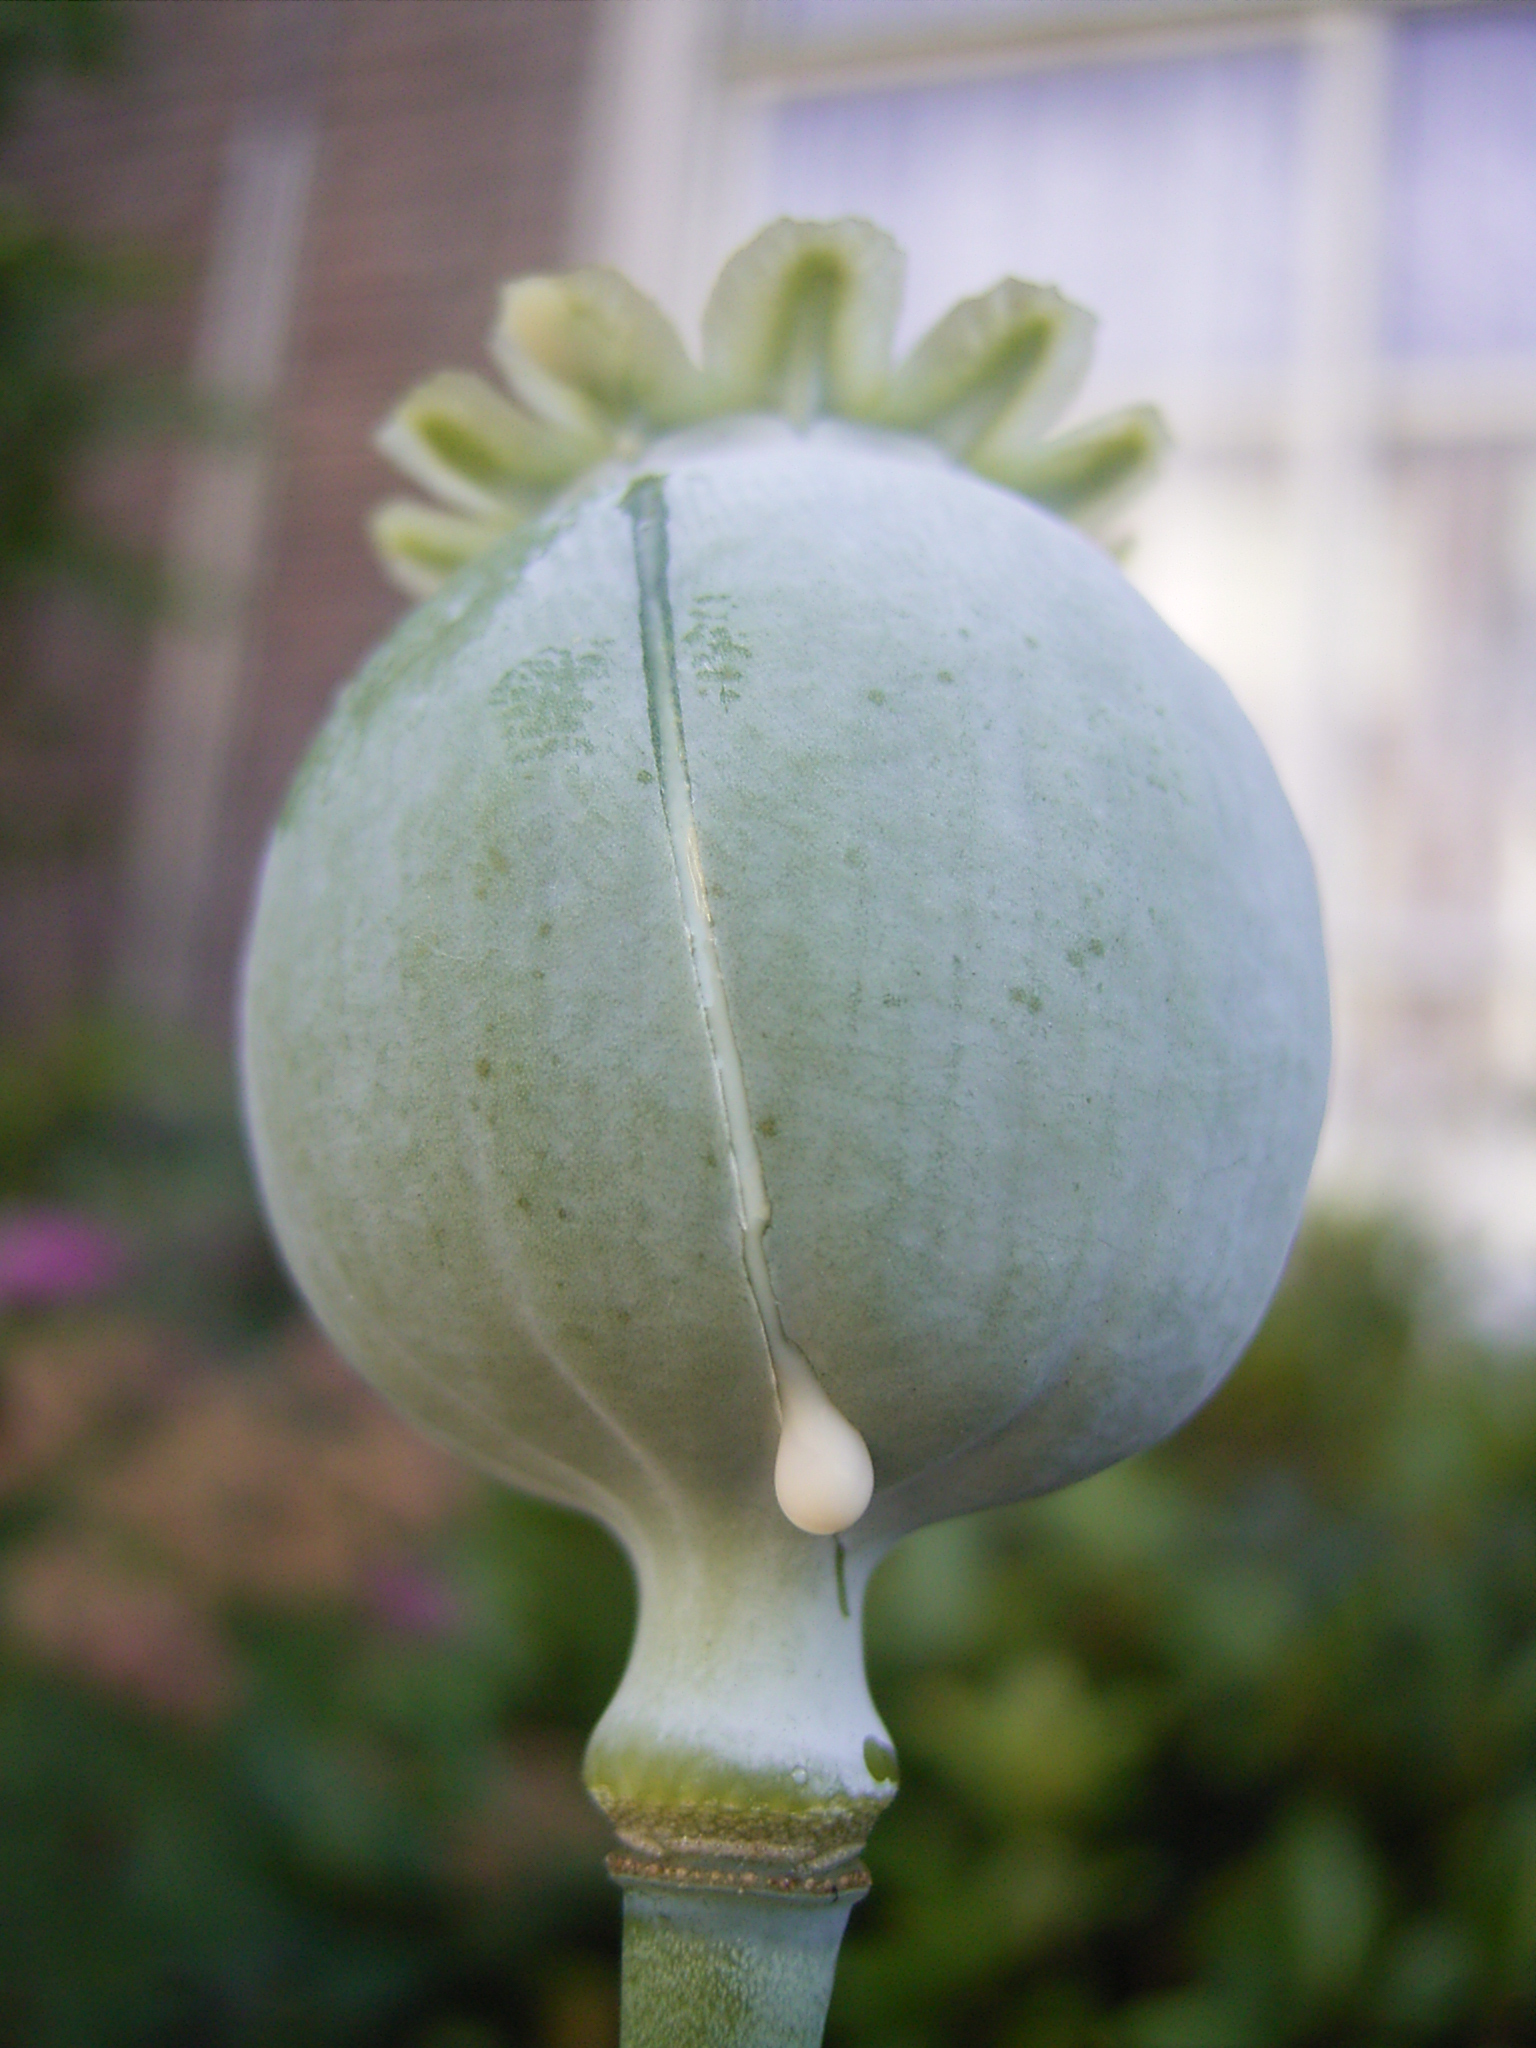 Foto em close do fruto da planta papoula. Ele está com um corte superficial e sai uma gota branca dele.